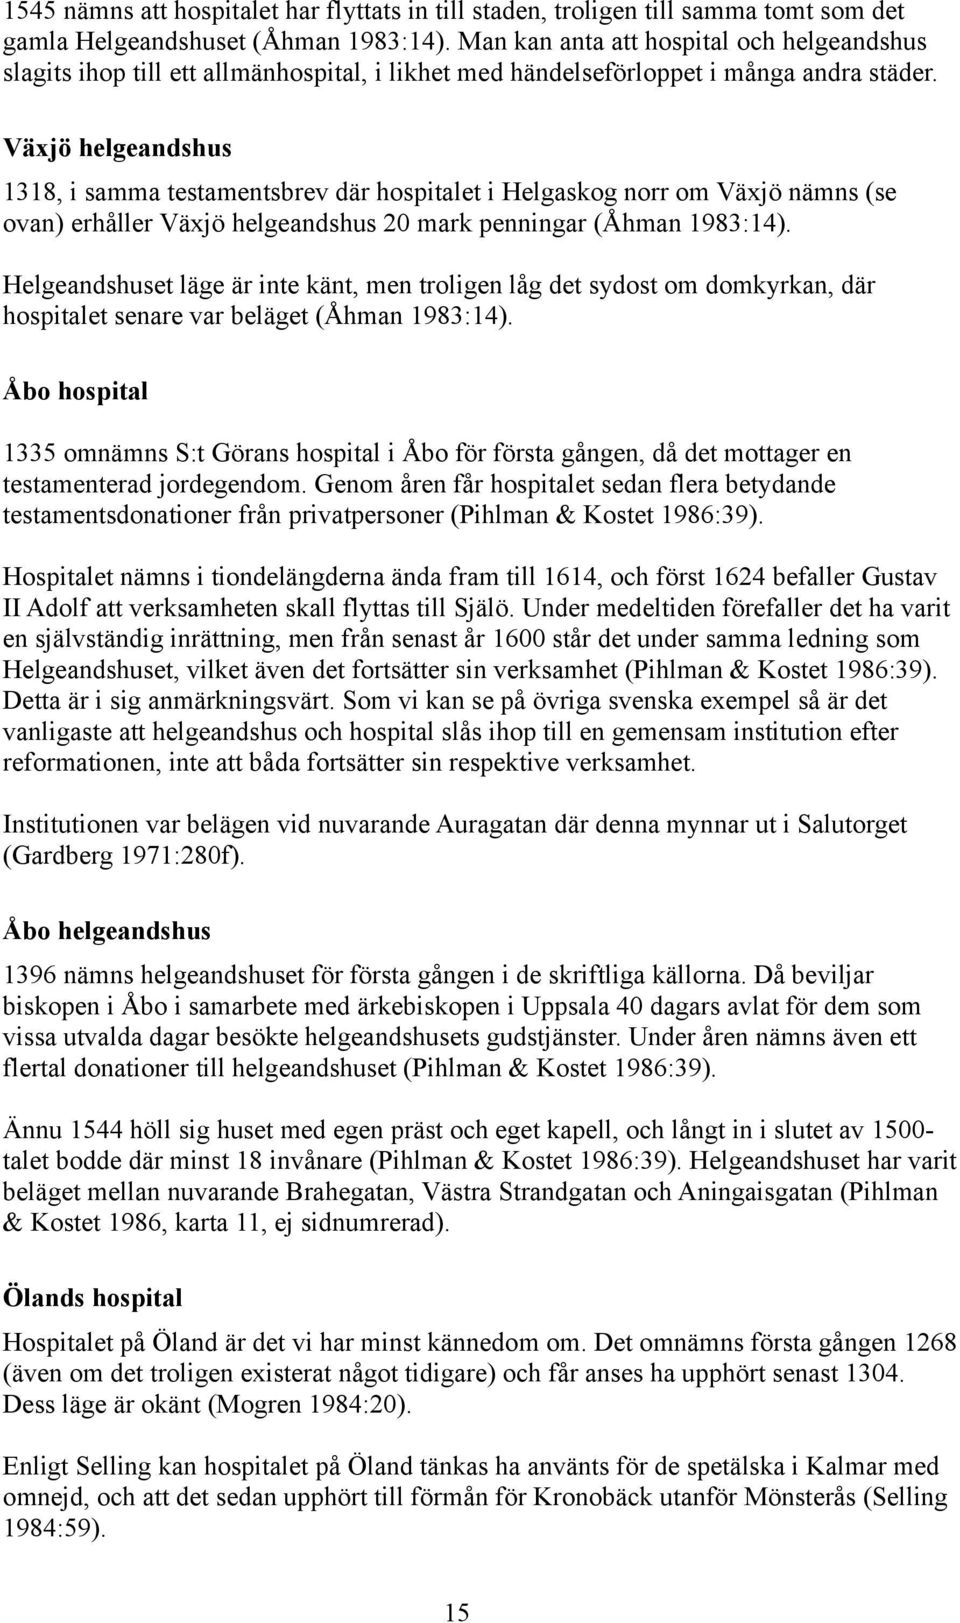 Växjö helgeandshus 1318, i samma testamentsbrev där hospitalet i Helgaskog norr om Växjö nämns (se ovan) erhåller Växjö helgeandshus 20 mark penningar (Åhman 1983:14).